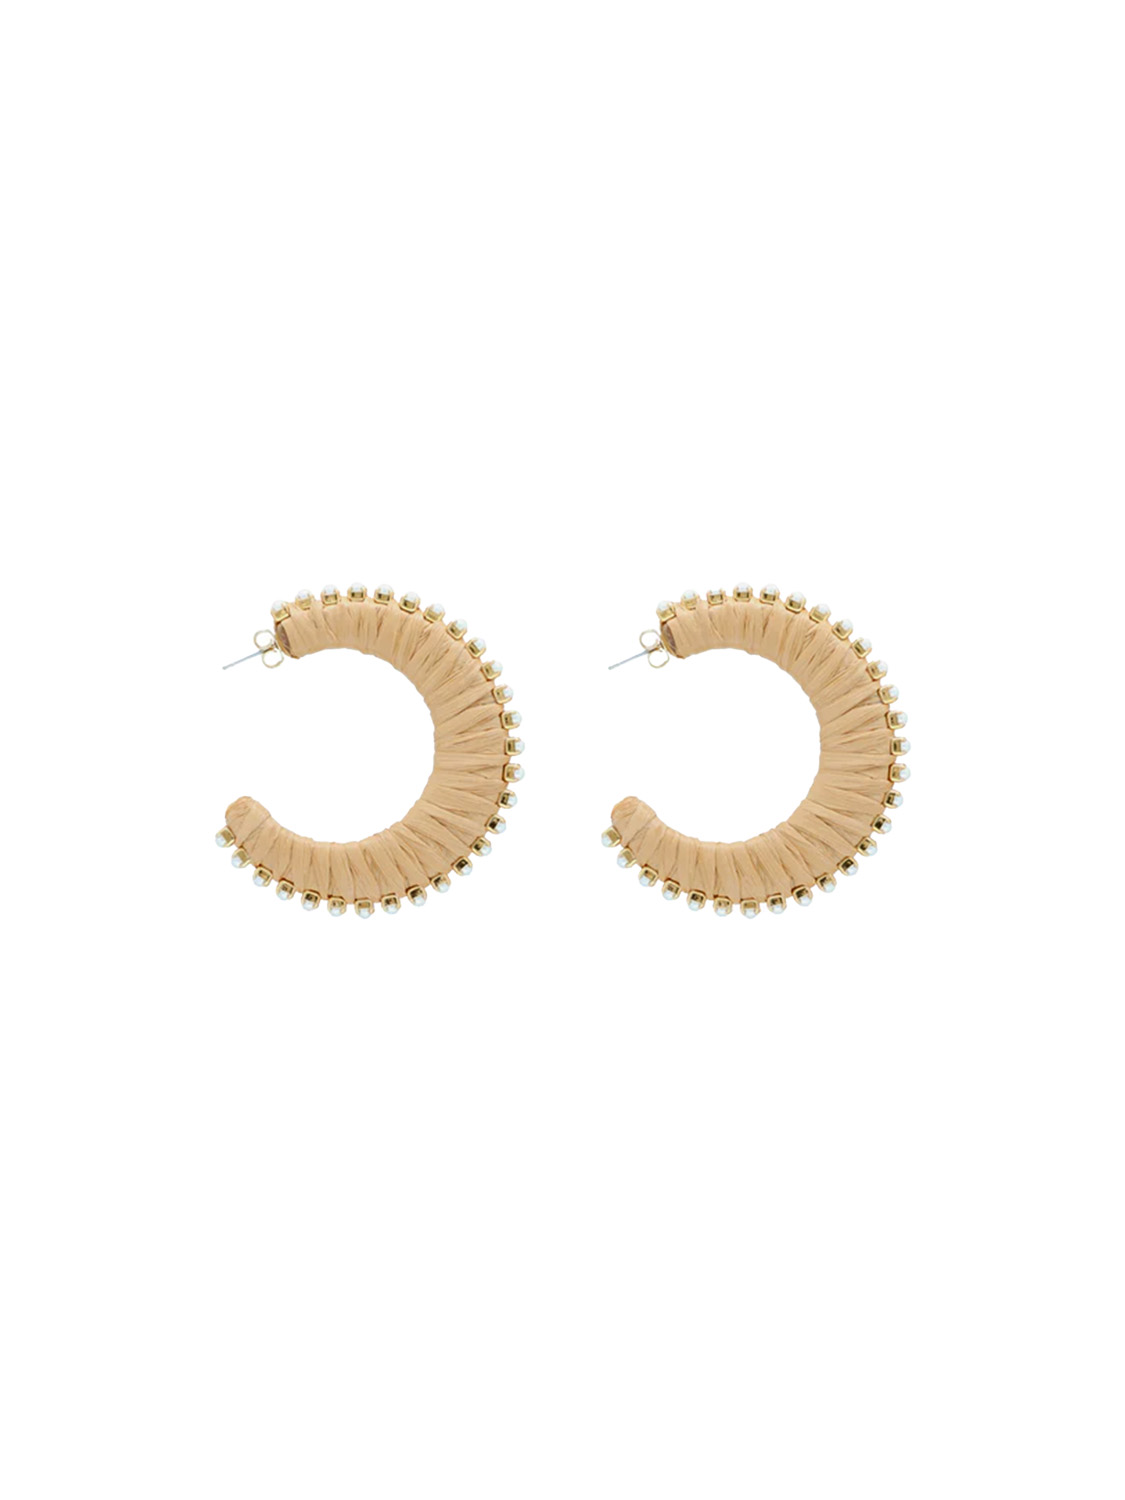 Raffia Pearl – Bast Ohrring mit Perlen-Details  